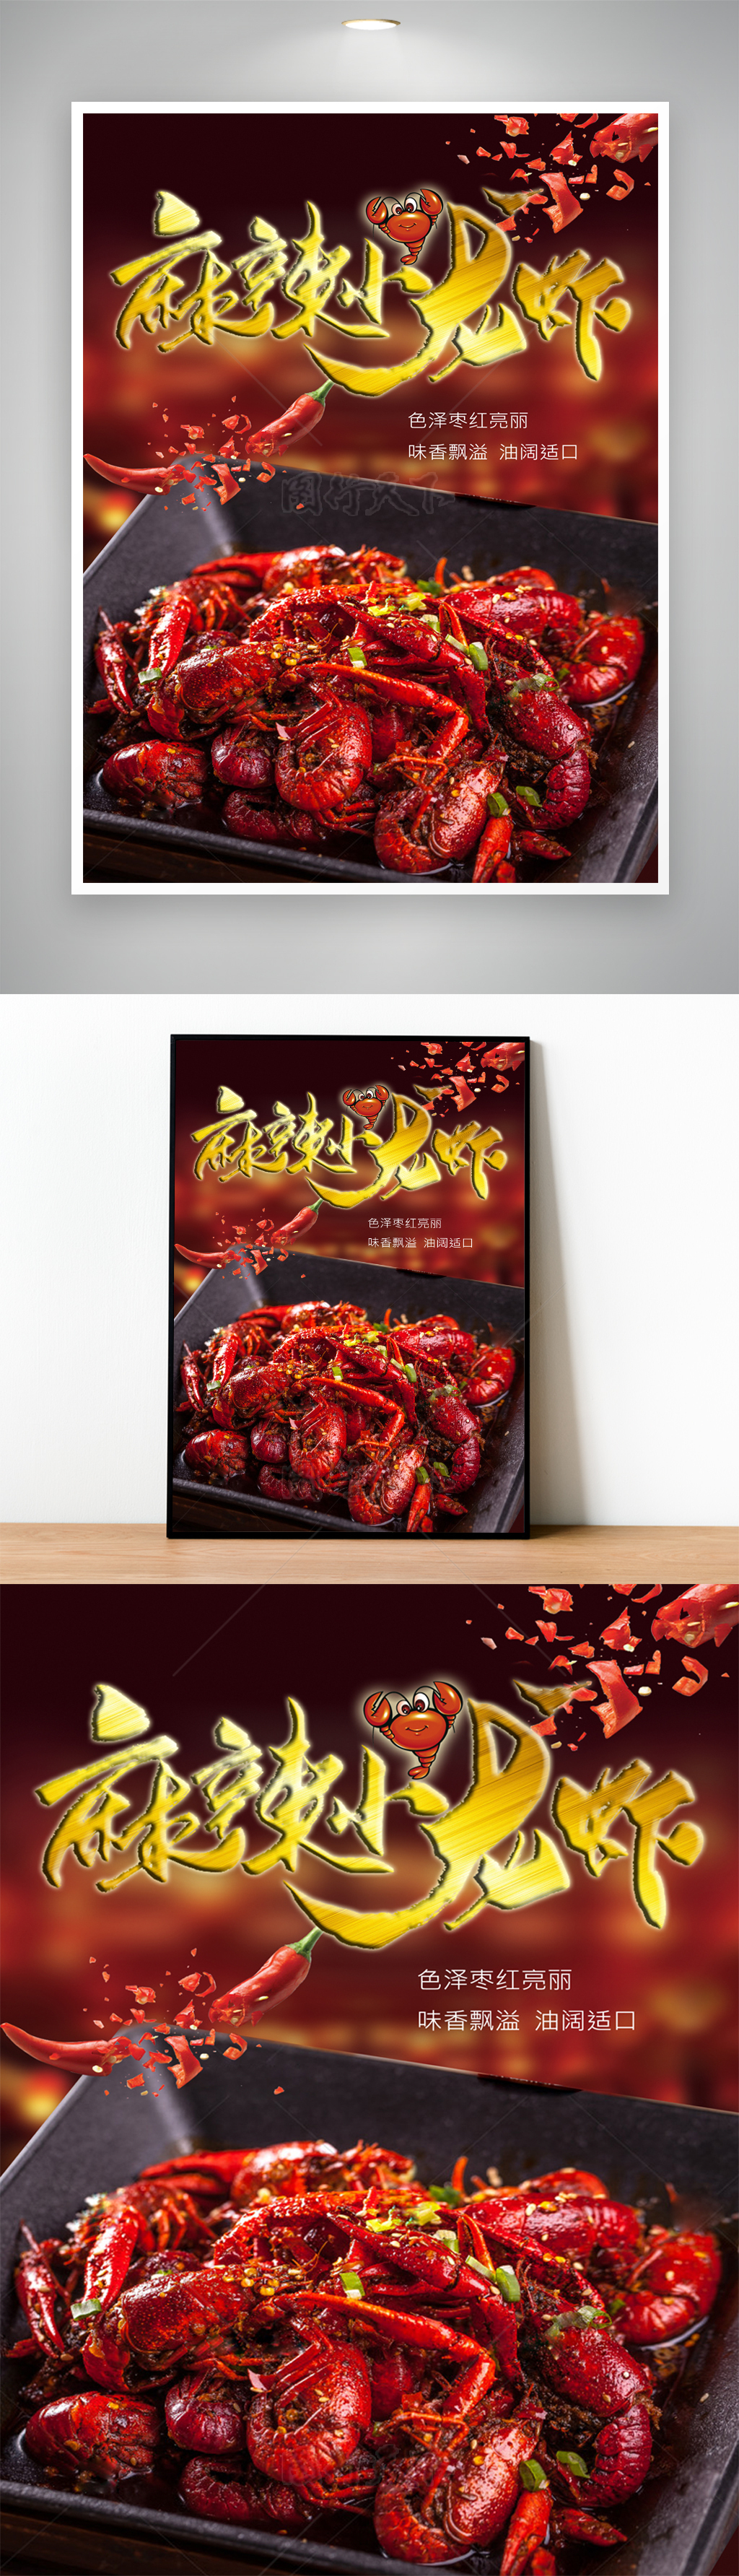 麻辣小龙虾夜市上市美味菜单海报